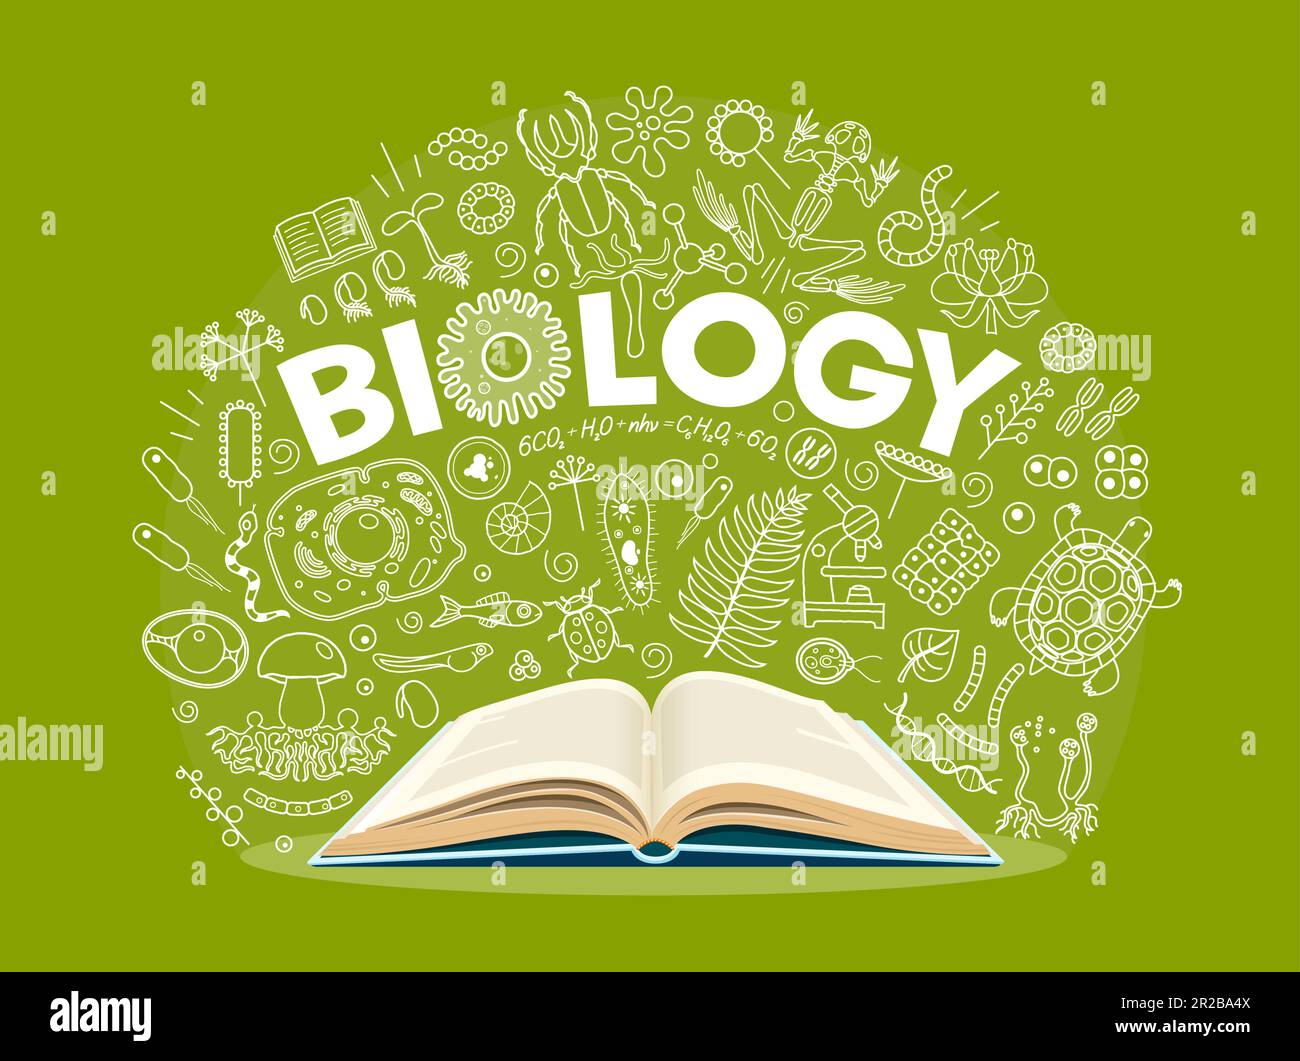 Biologie-Lehrbuch, Darstellung von Wissenschaftssymbolen auf der Schulbehörde. Vektor wissenschaftlicher Bildungshintergrund mit offenen Büchern und dünnen Linien von Pflanzen, Zellen unter dem Mikroskop, Tieren, Pilzen und Insekten Stock Vektor